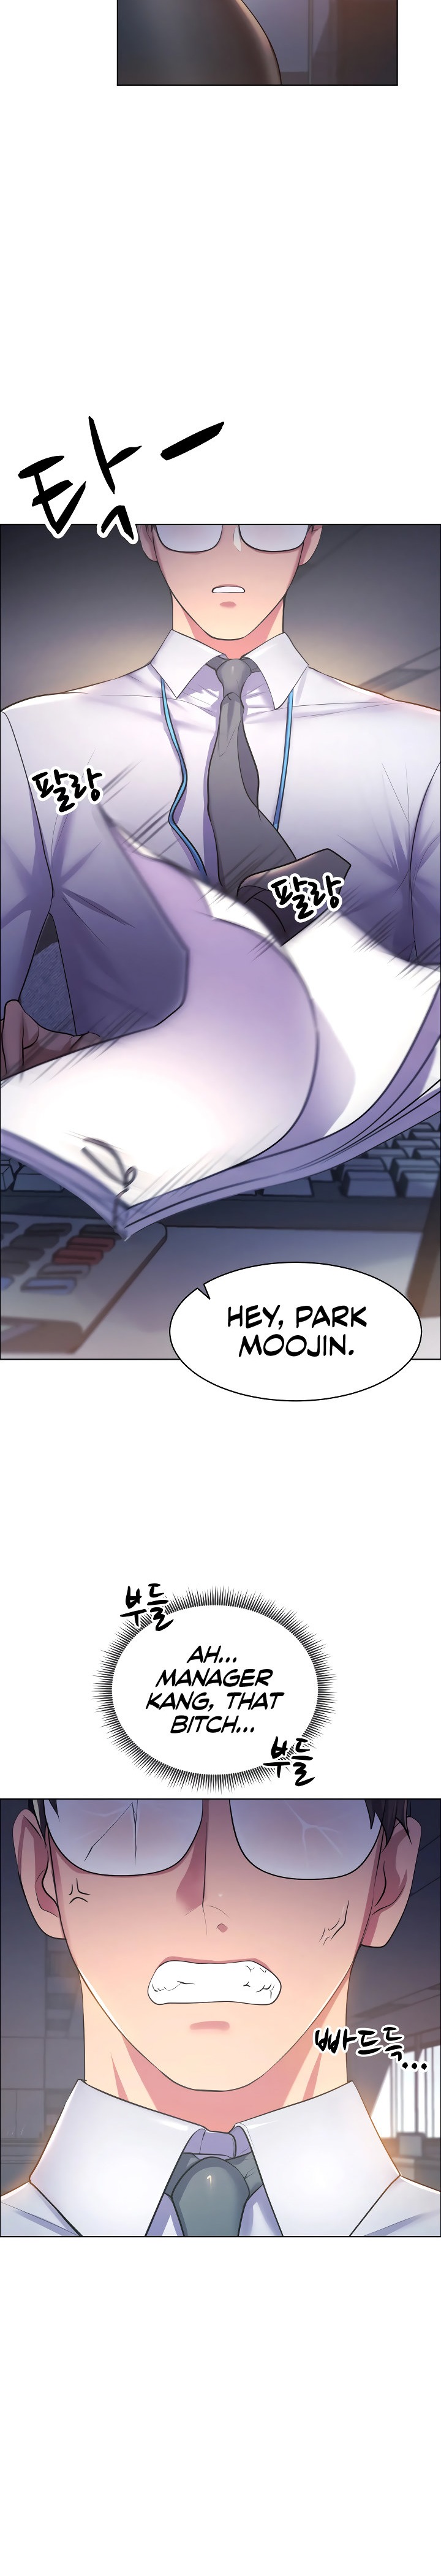 Park Moojik Hit the Jackpot - Chapter 1 Page 3